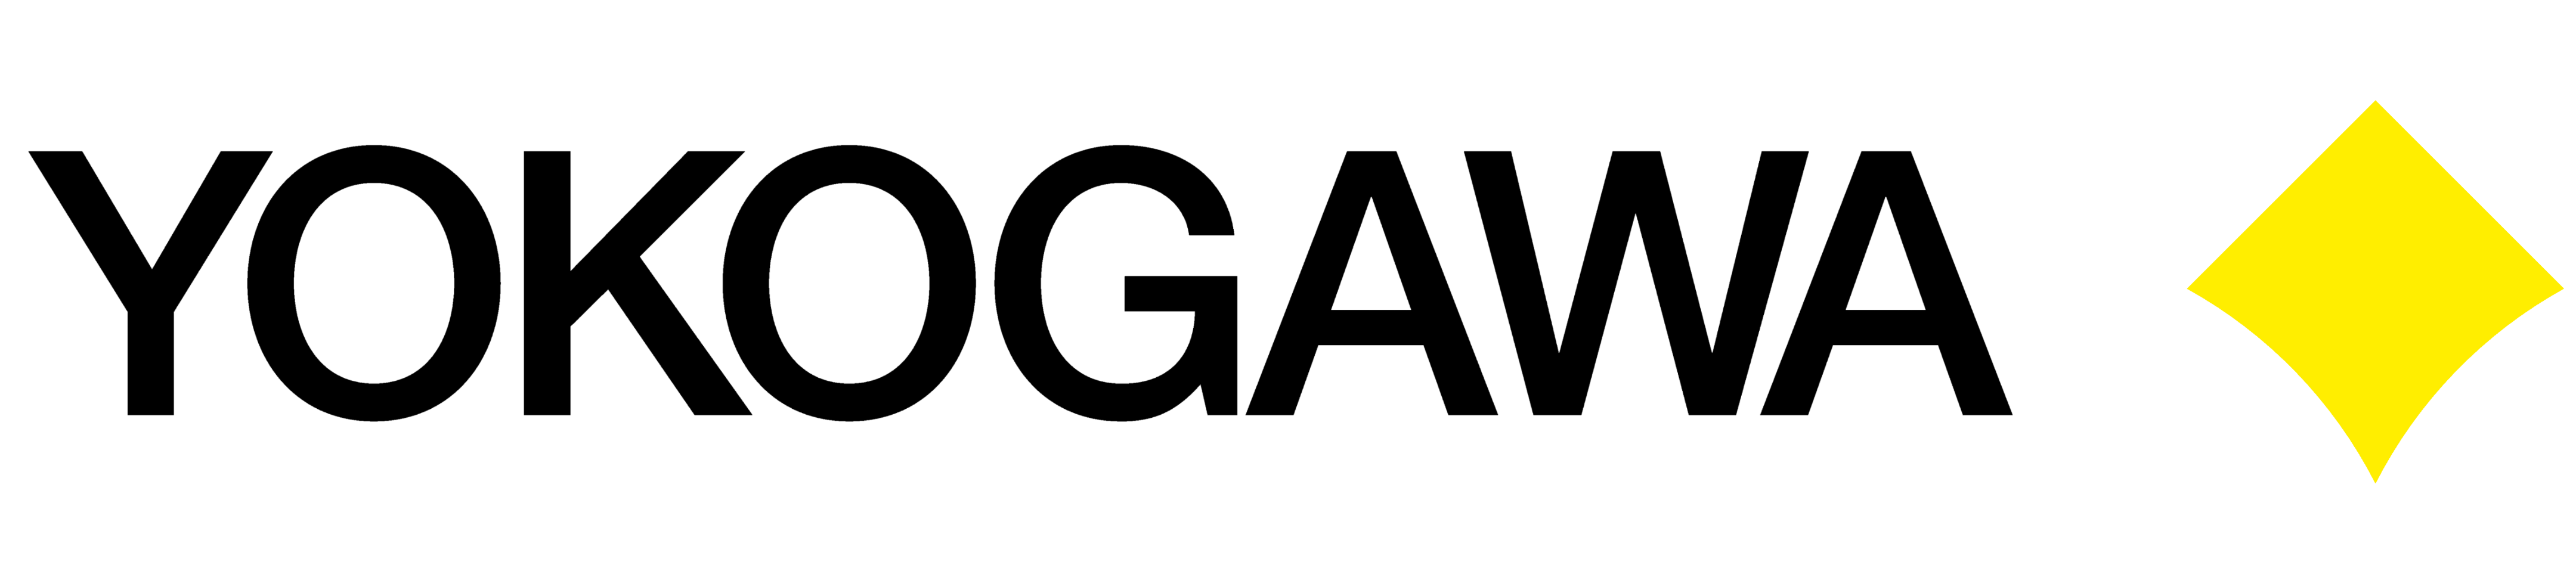 Yokogawa logo, logotype